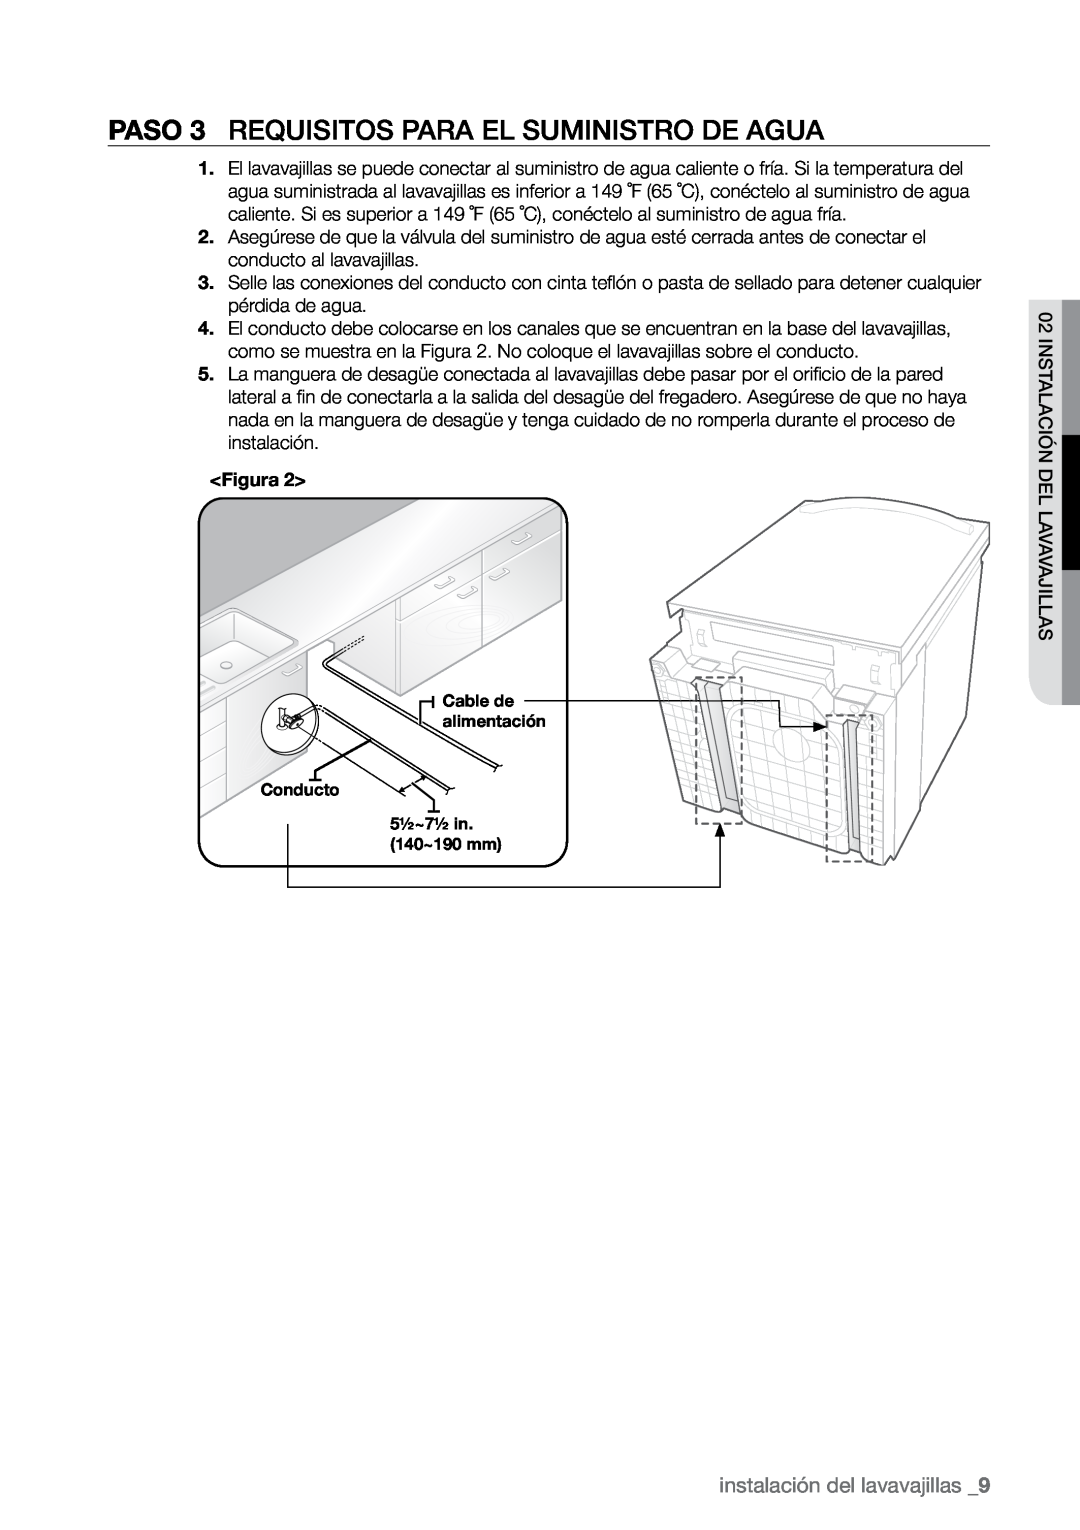 Samsung DMR78, DMR57, DMR77 manual PASO 3 Requisitos para el suministro de agua, instalación del lavavajillas , Figura 